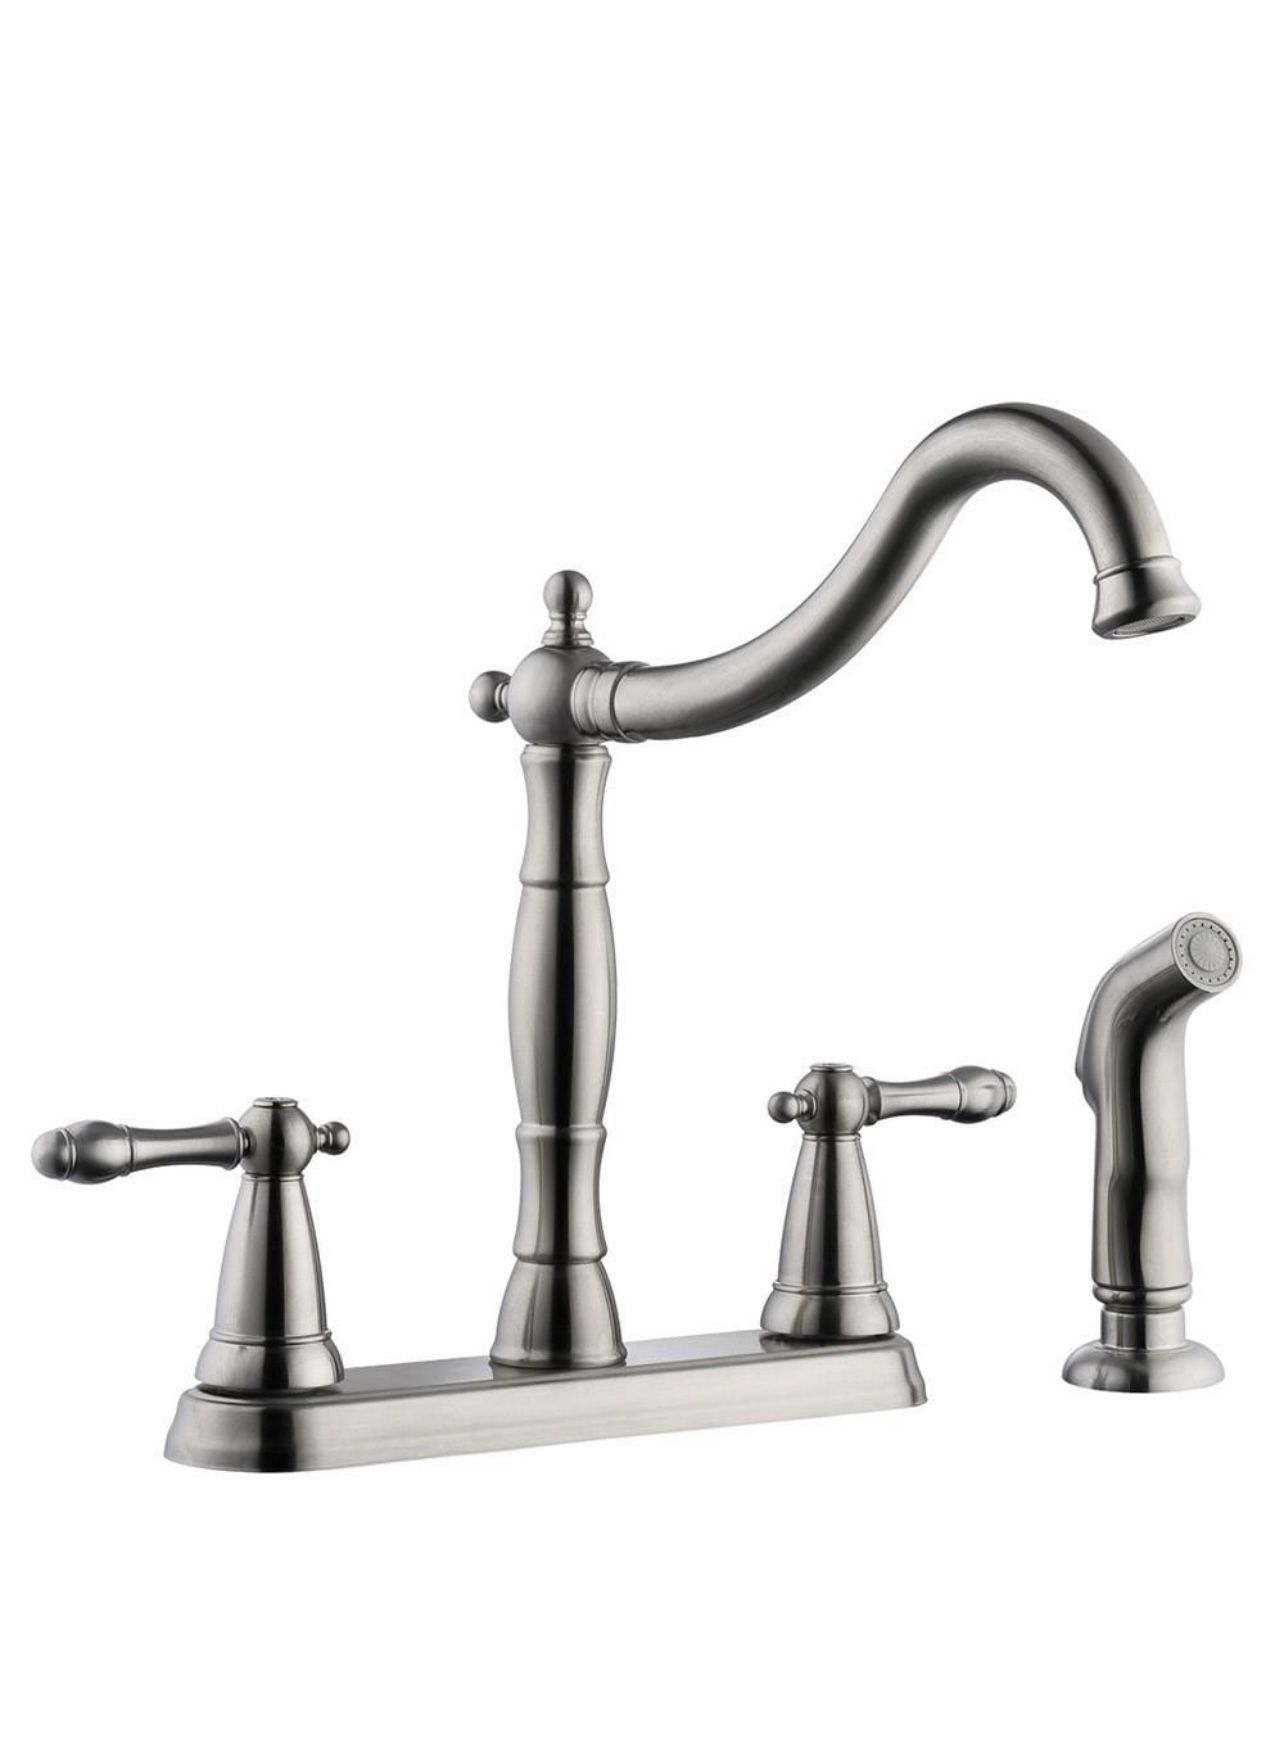 Faucet, Oakmont Satin Nickel 1-handle deck-mount high-arc handle Kitchen faucet